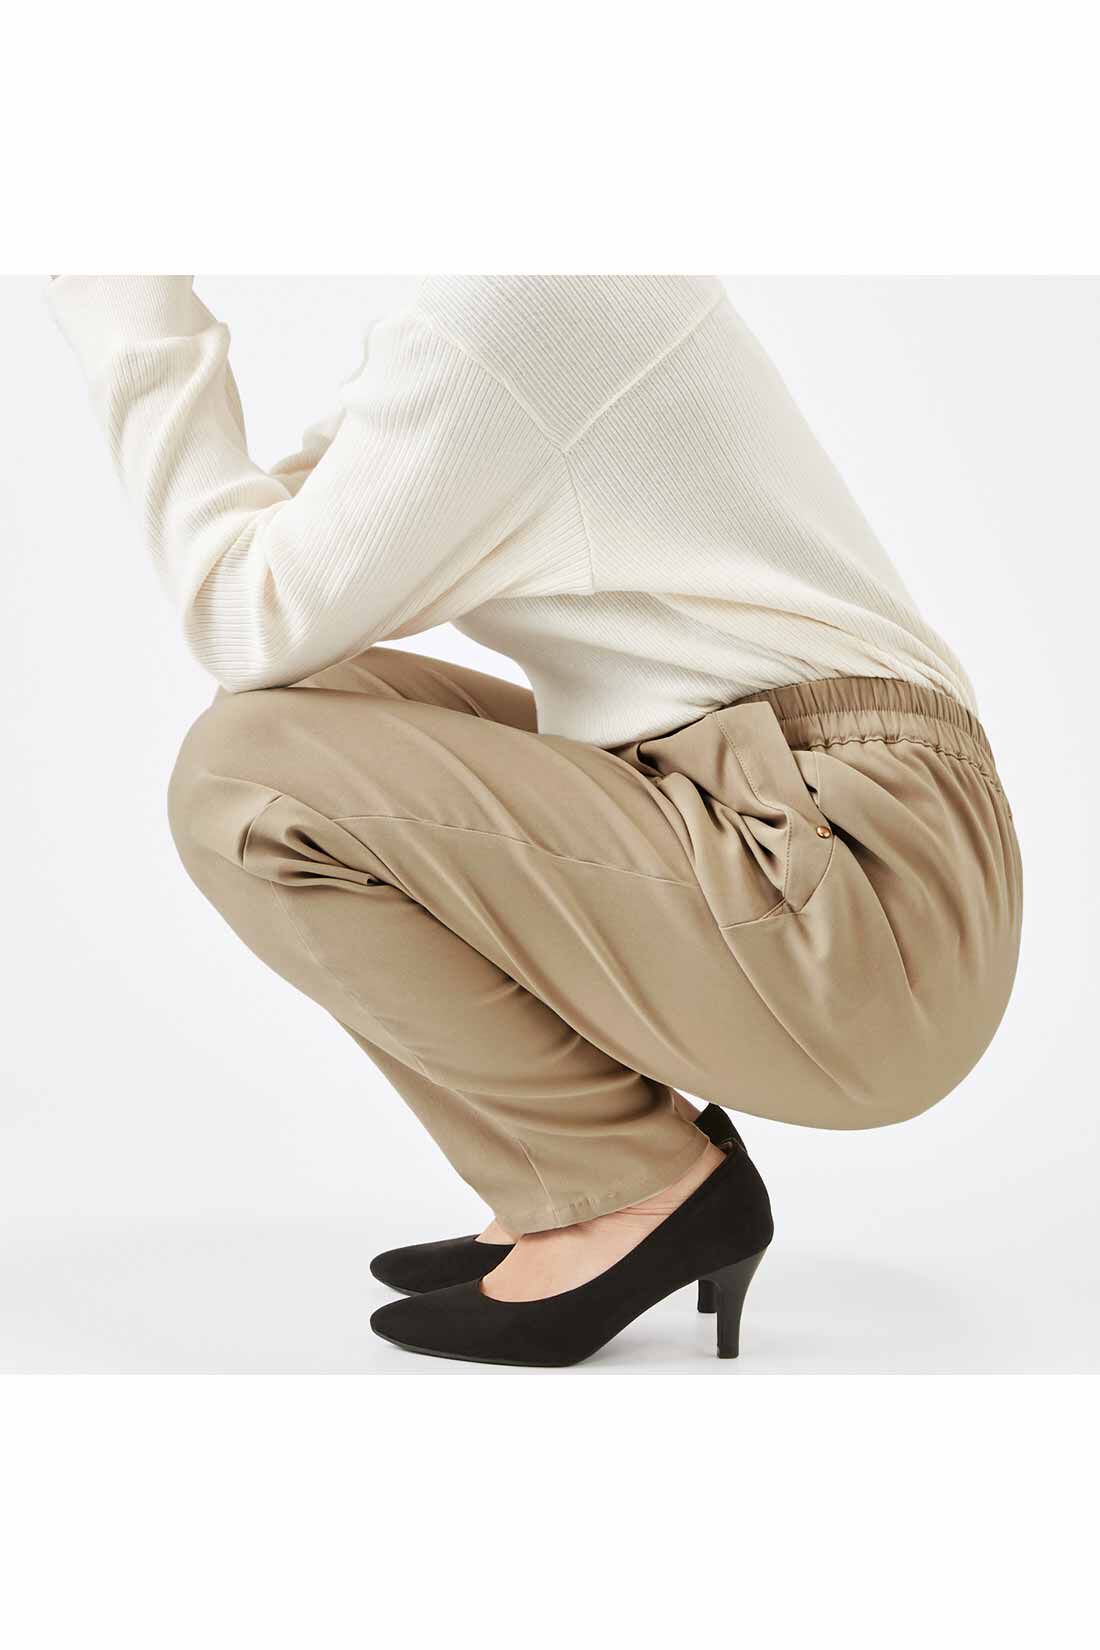 IEDIT|IEDIT[イディット]　ぐいっとしなやか すらりと美脚！ ストレッチ布はく素材のエアノビワイドパンツ〈ベージュ〉|しゃがんでも座りっぱなしでも快適で、ひざやおしりも伸びやからくちん。背中も見えにくくて安心！